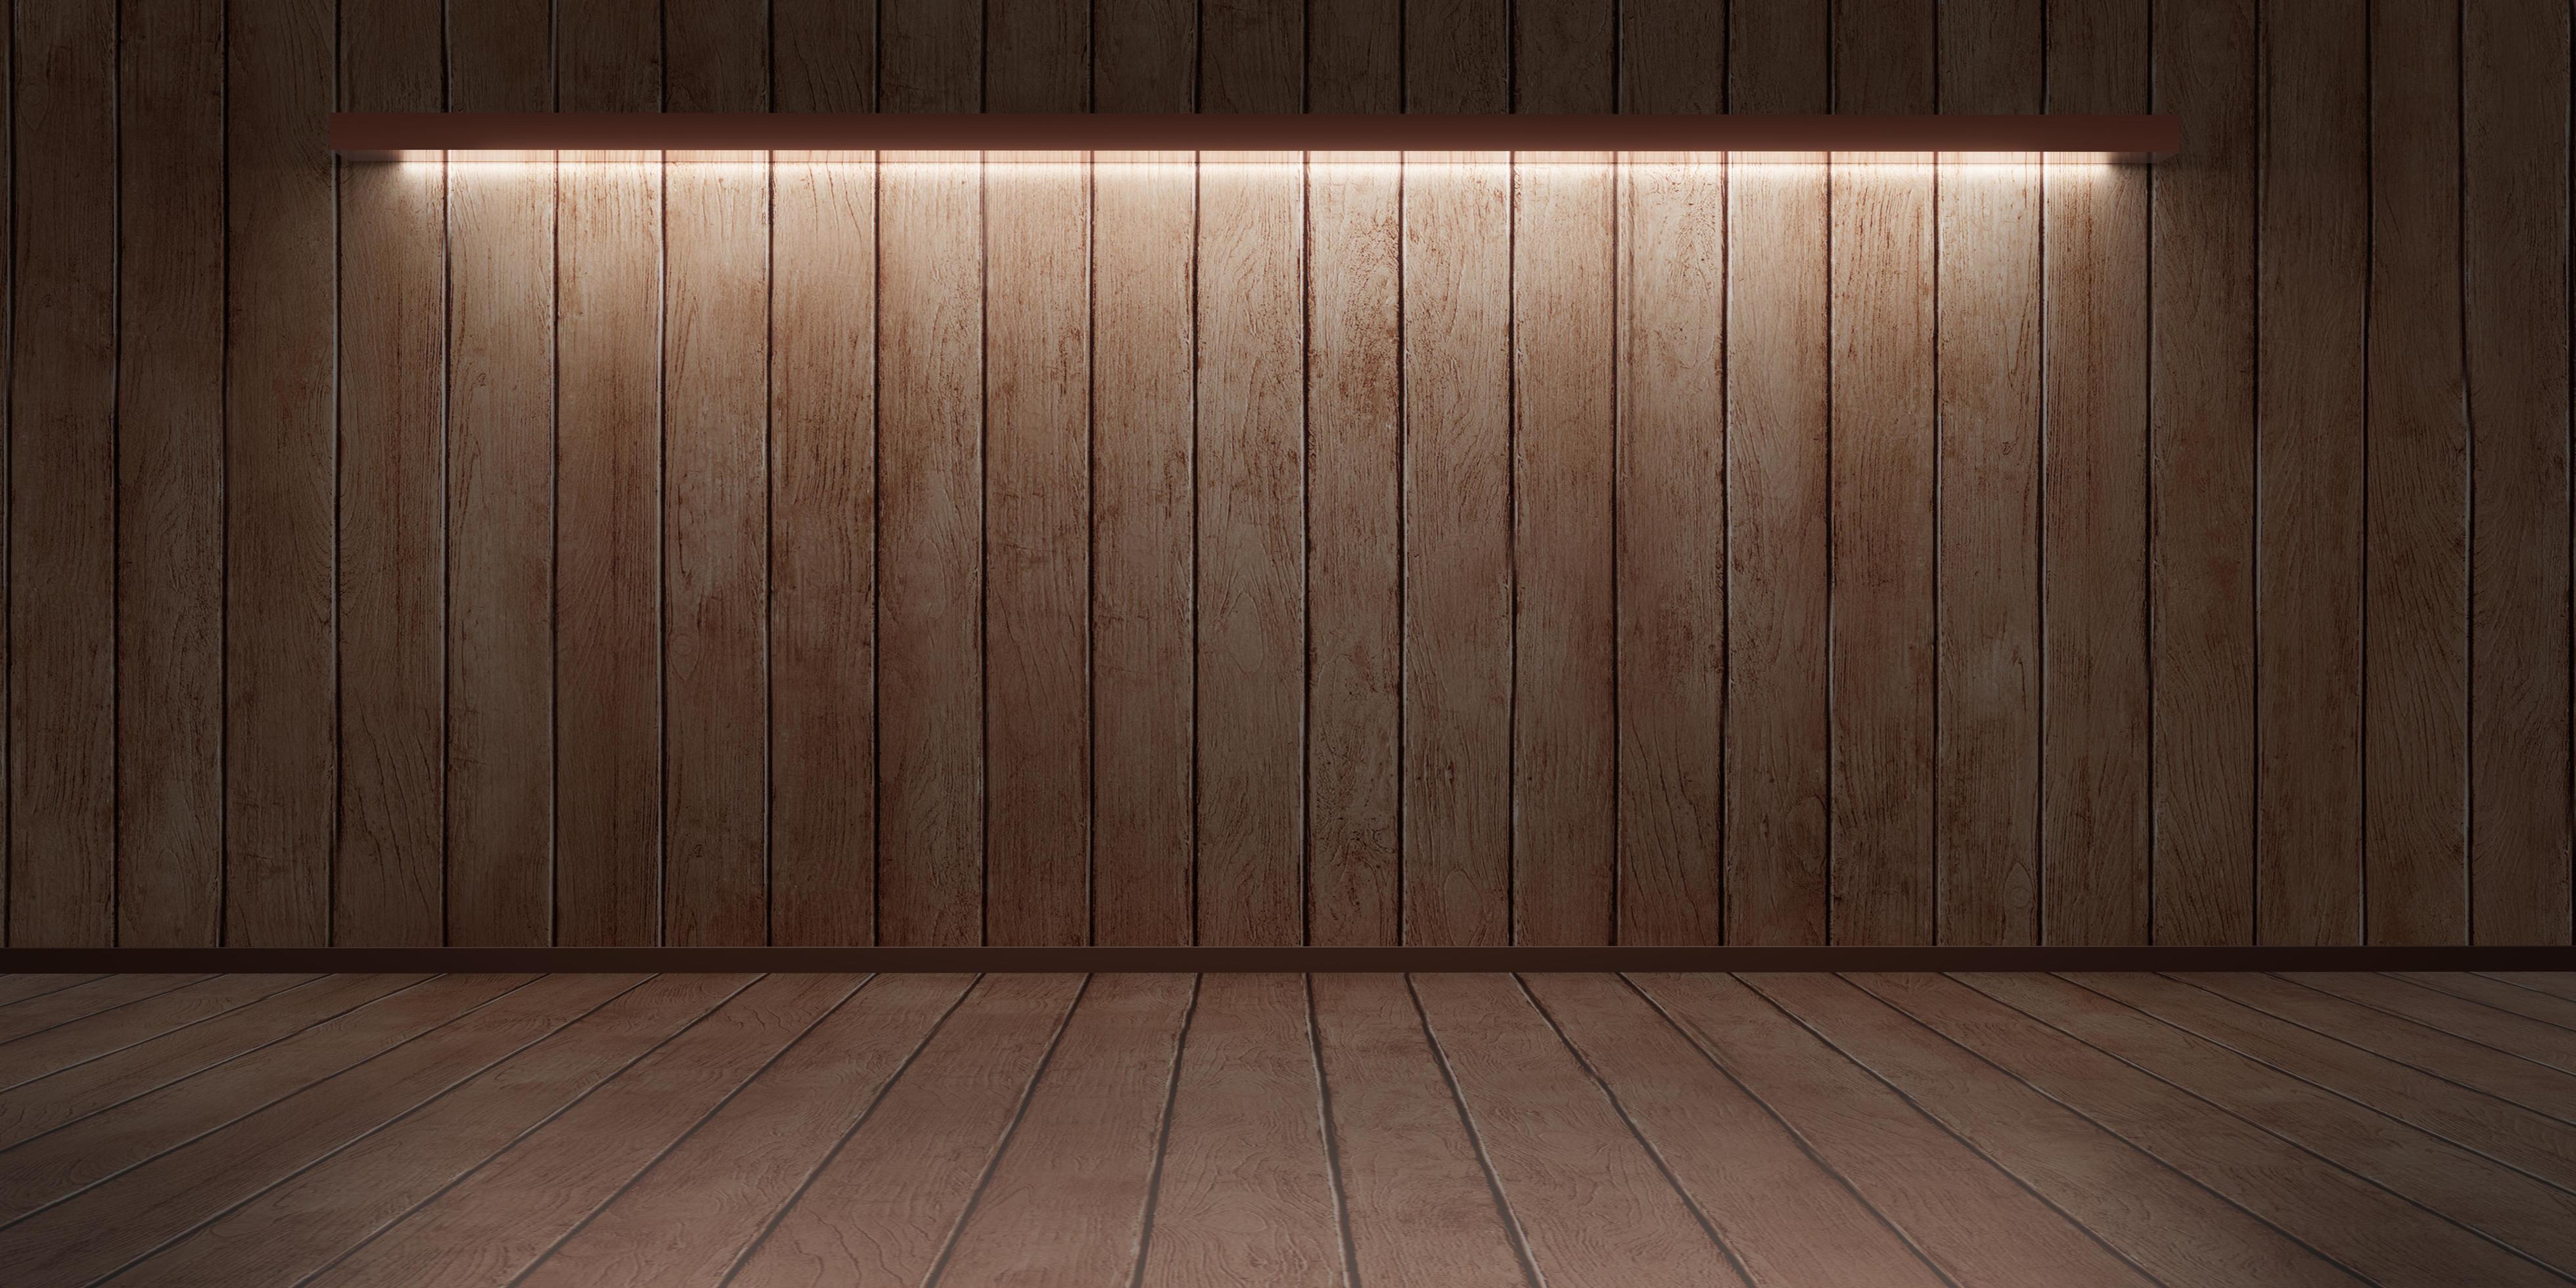 Sàn gỗ mang đến cho không gian sống của bạn sự sang trọng và ấm cúng. Với độ bền, độ bền và độ chịu lực tốt, sàn gỗ là lựa chọn tuyệt vời cho phòng khách, phòng ngủ và văn phòng làm việc.